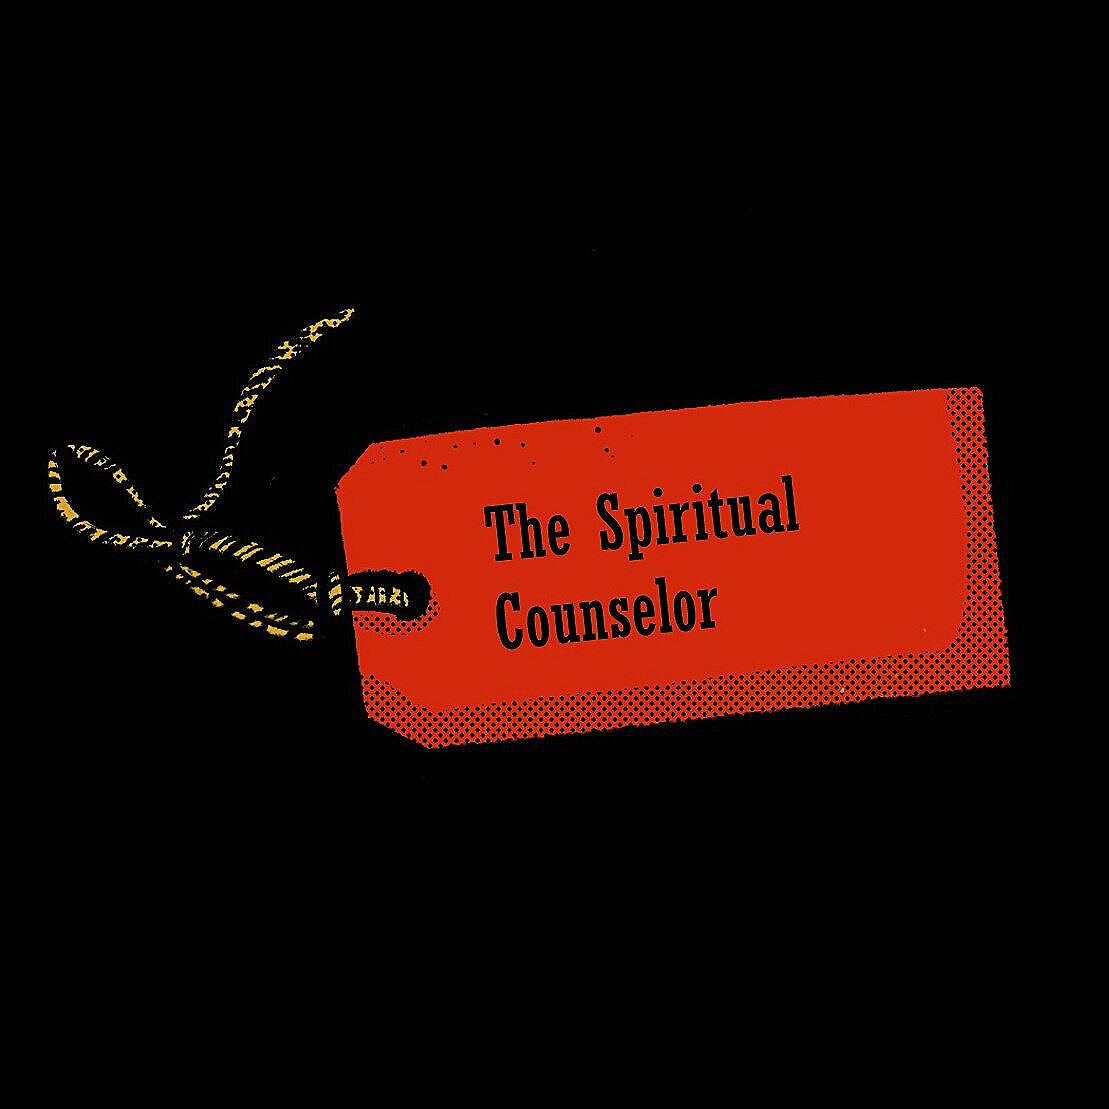 Episode 1: The Spiritual Counselor